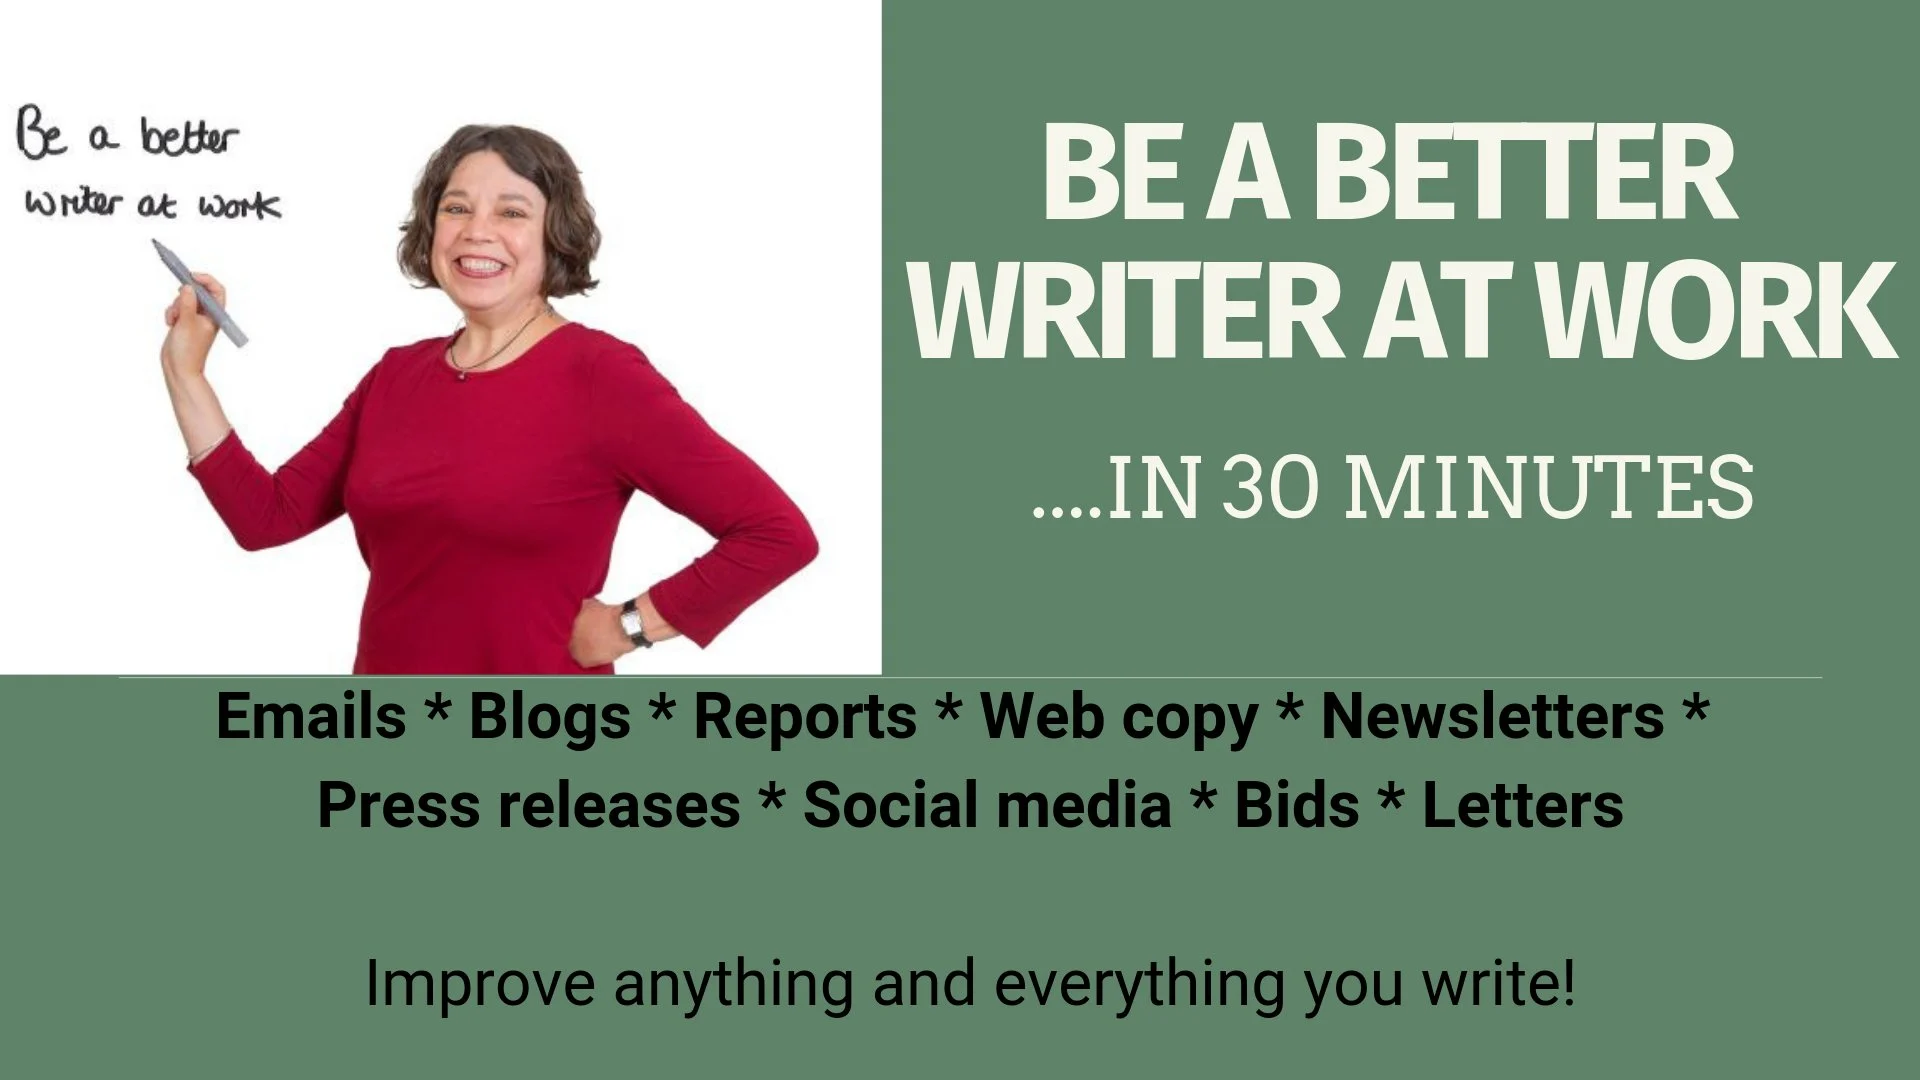 آموزش در 30 دقیقه نویسنده بهتری در محل کار باشید. ایمیل‌ها، پست‌های وبلاگ، گزارش‌ها و موارد دیگر را بهبود بخشید